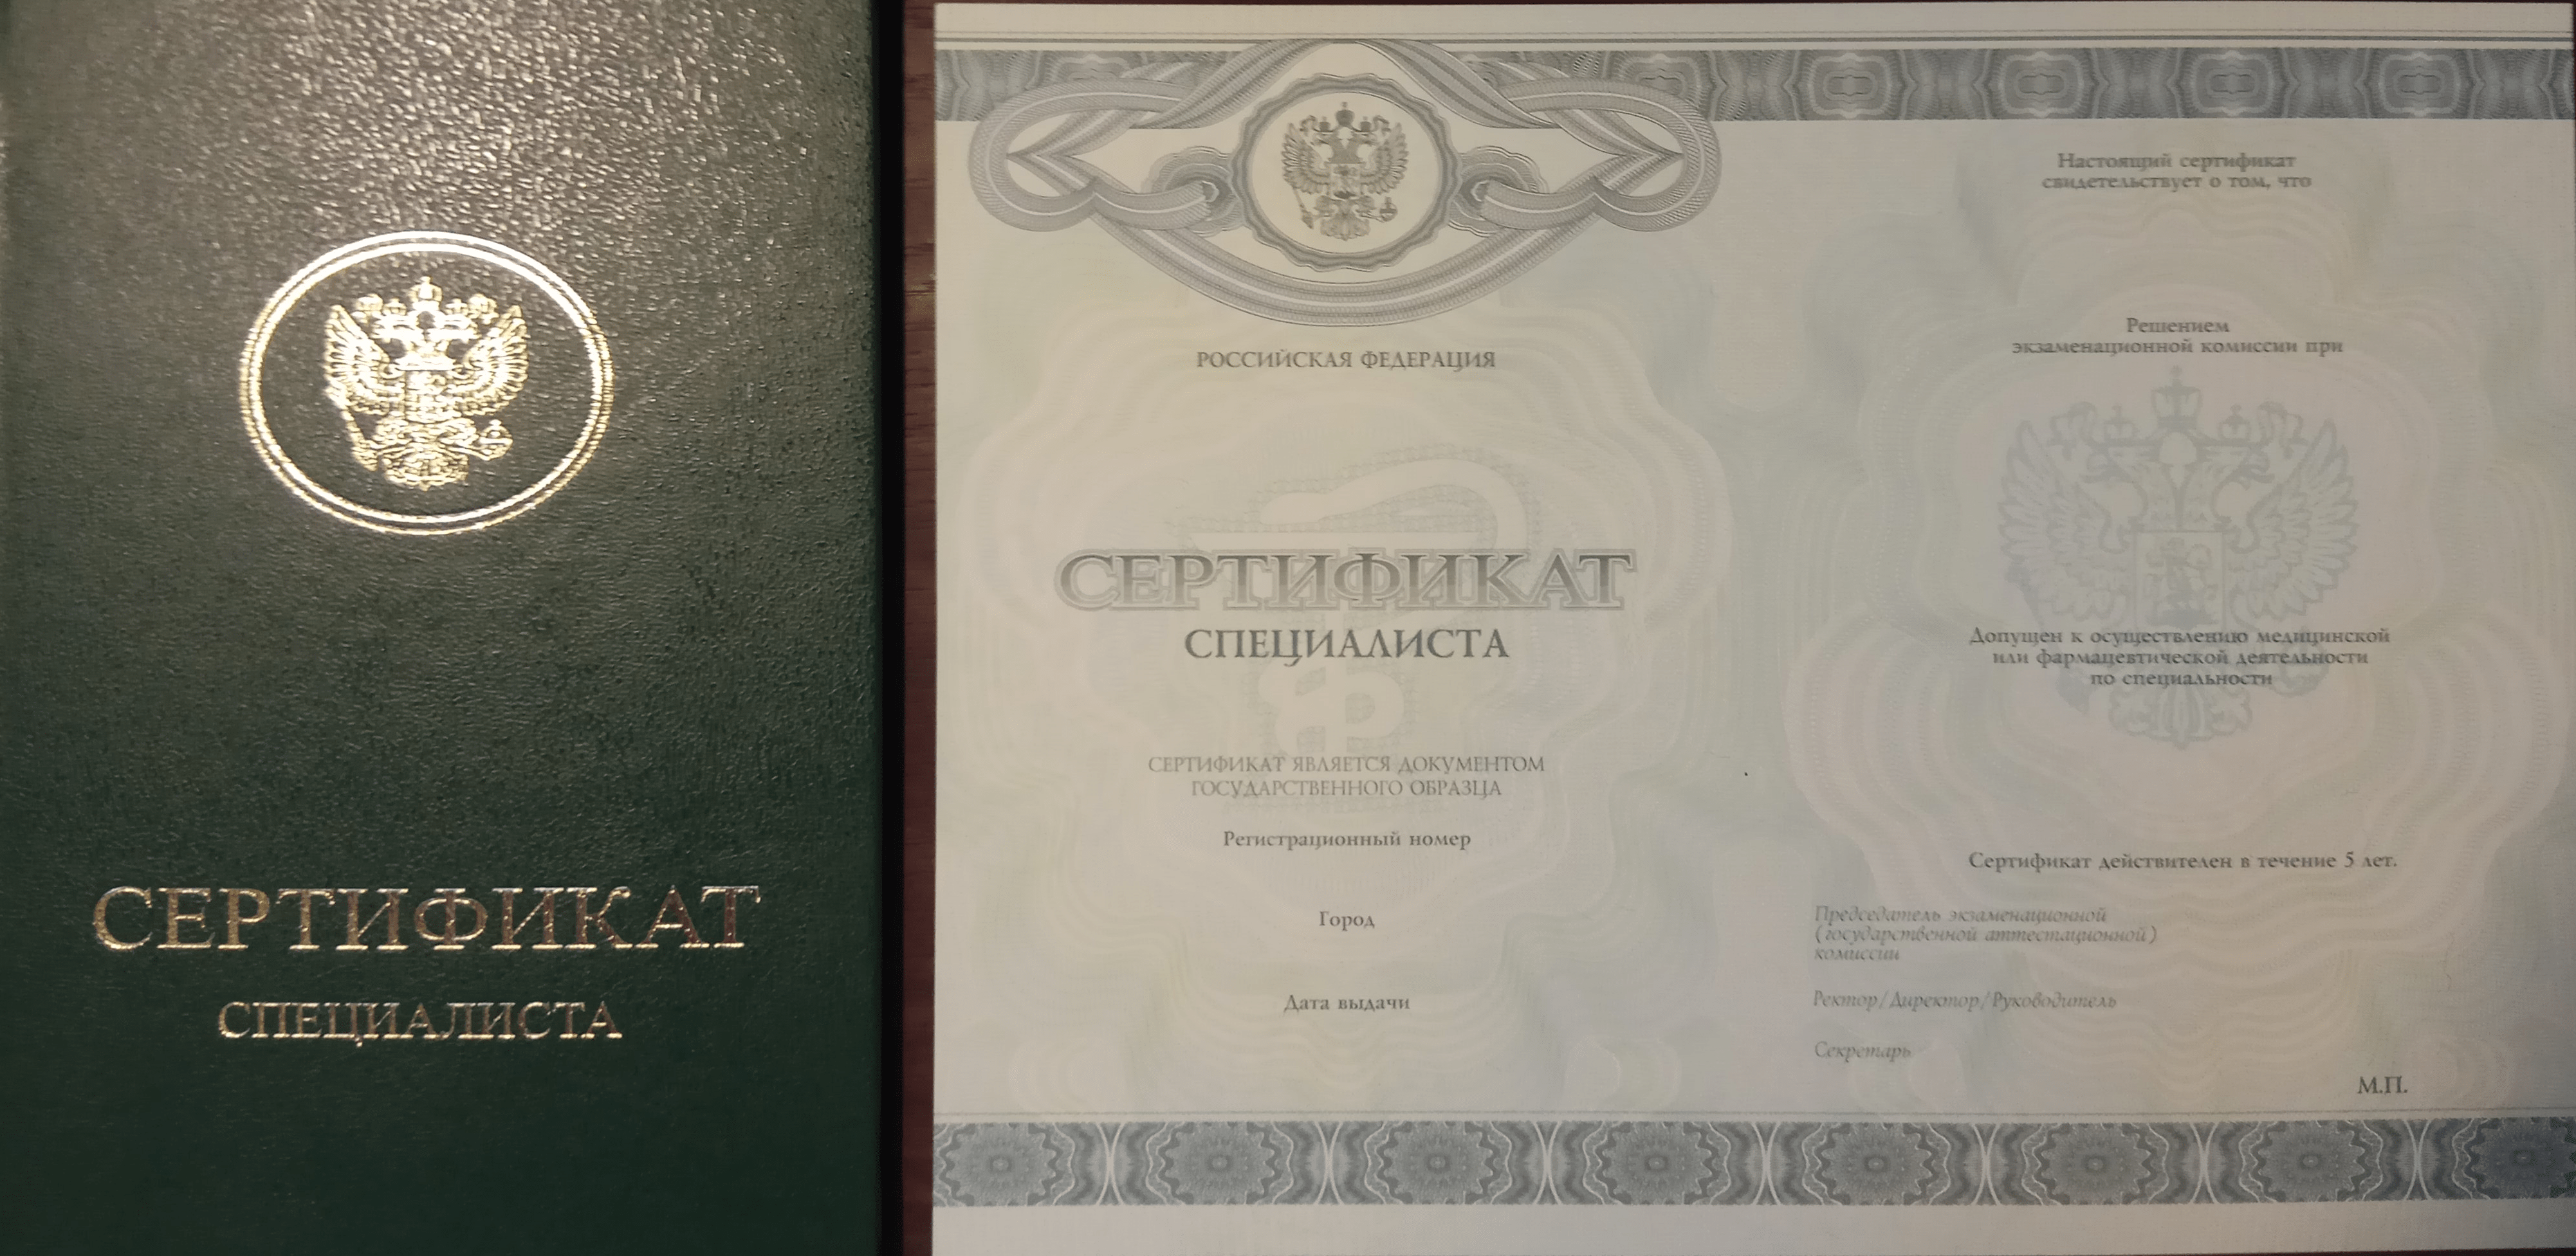 Сертификат специалиста государственного образца